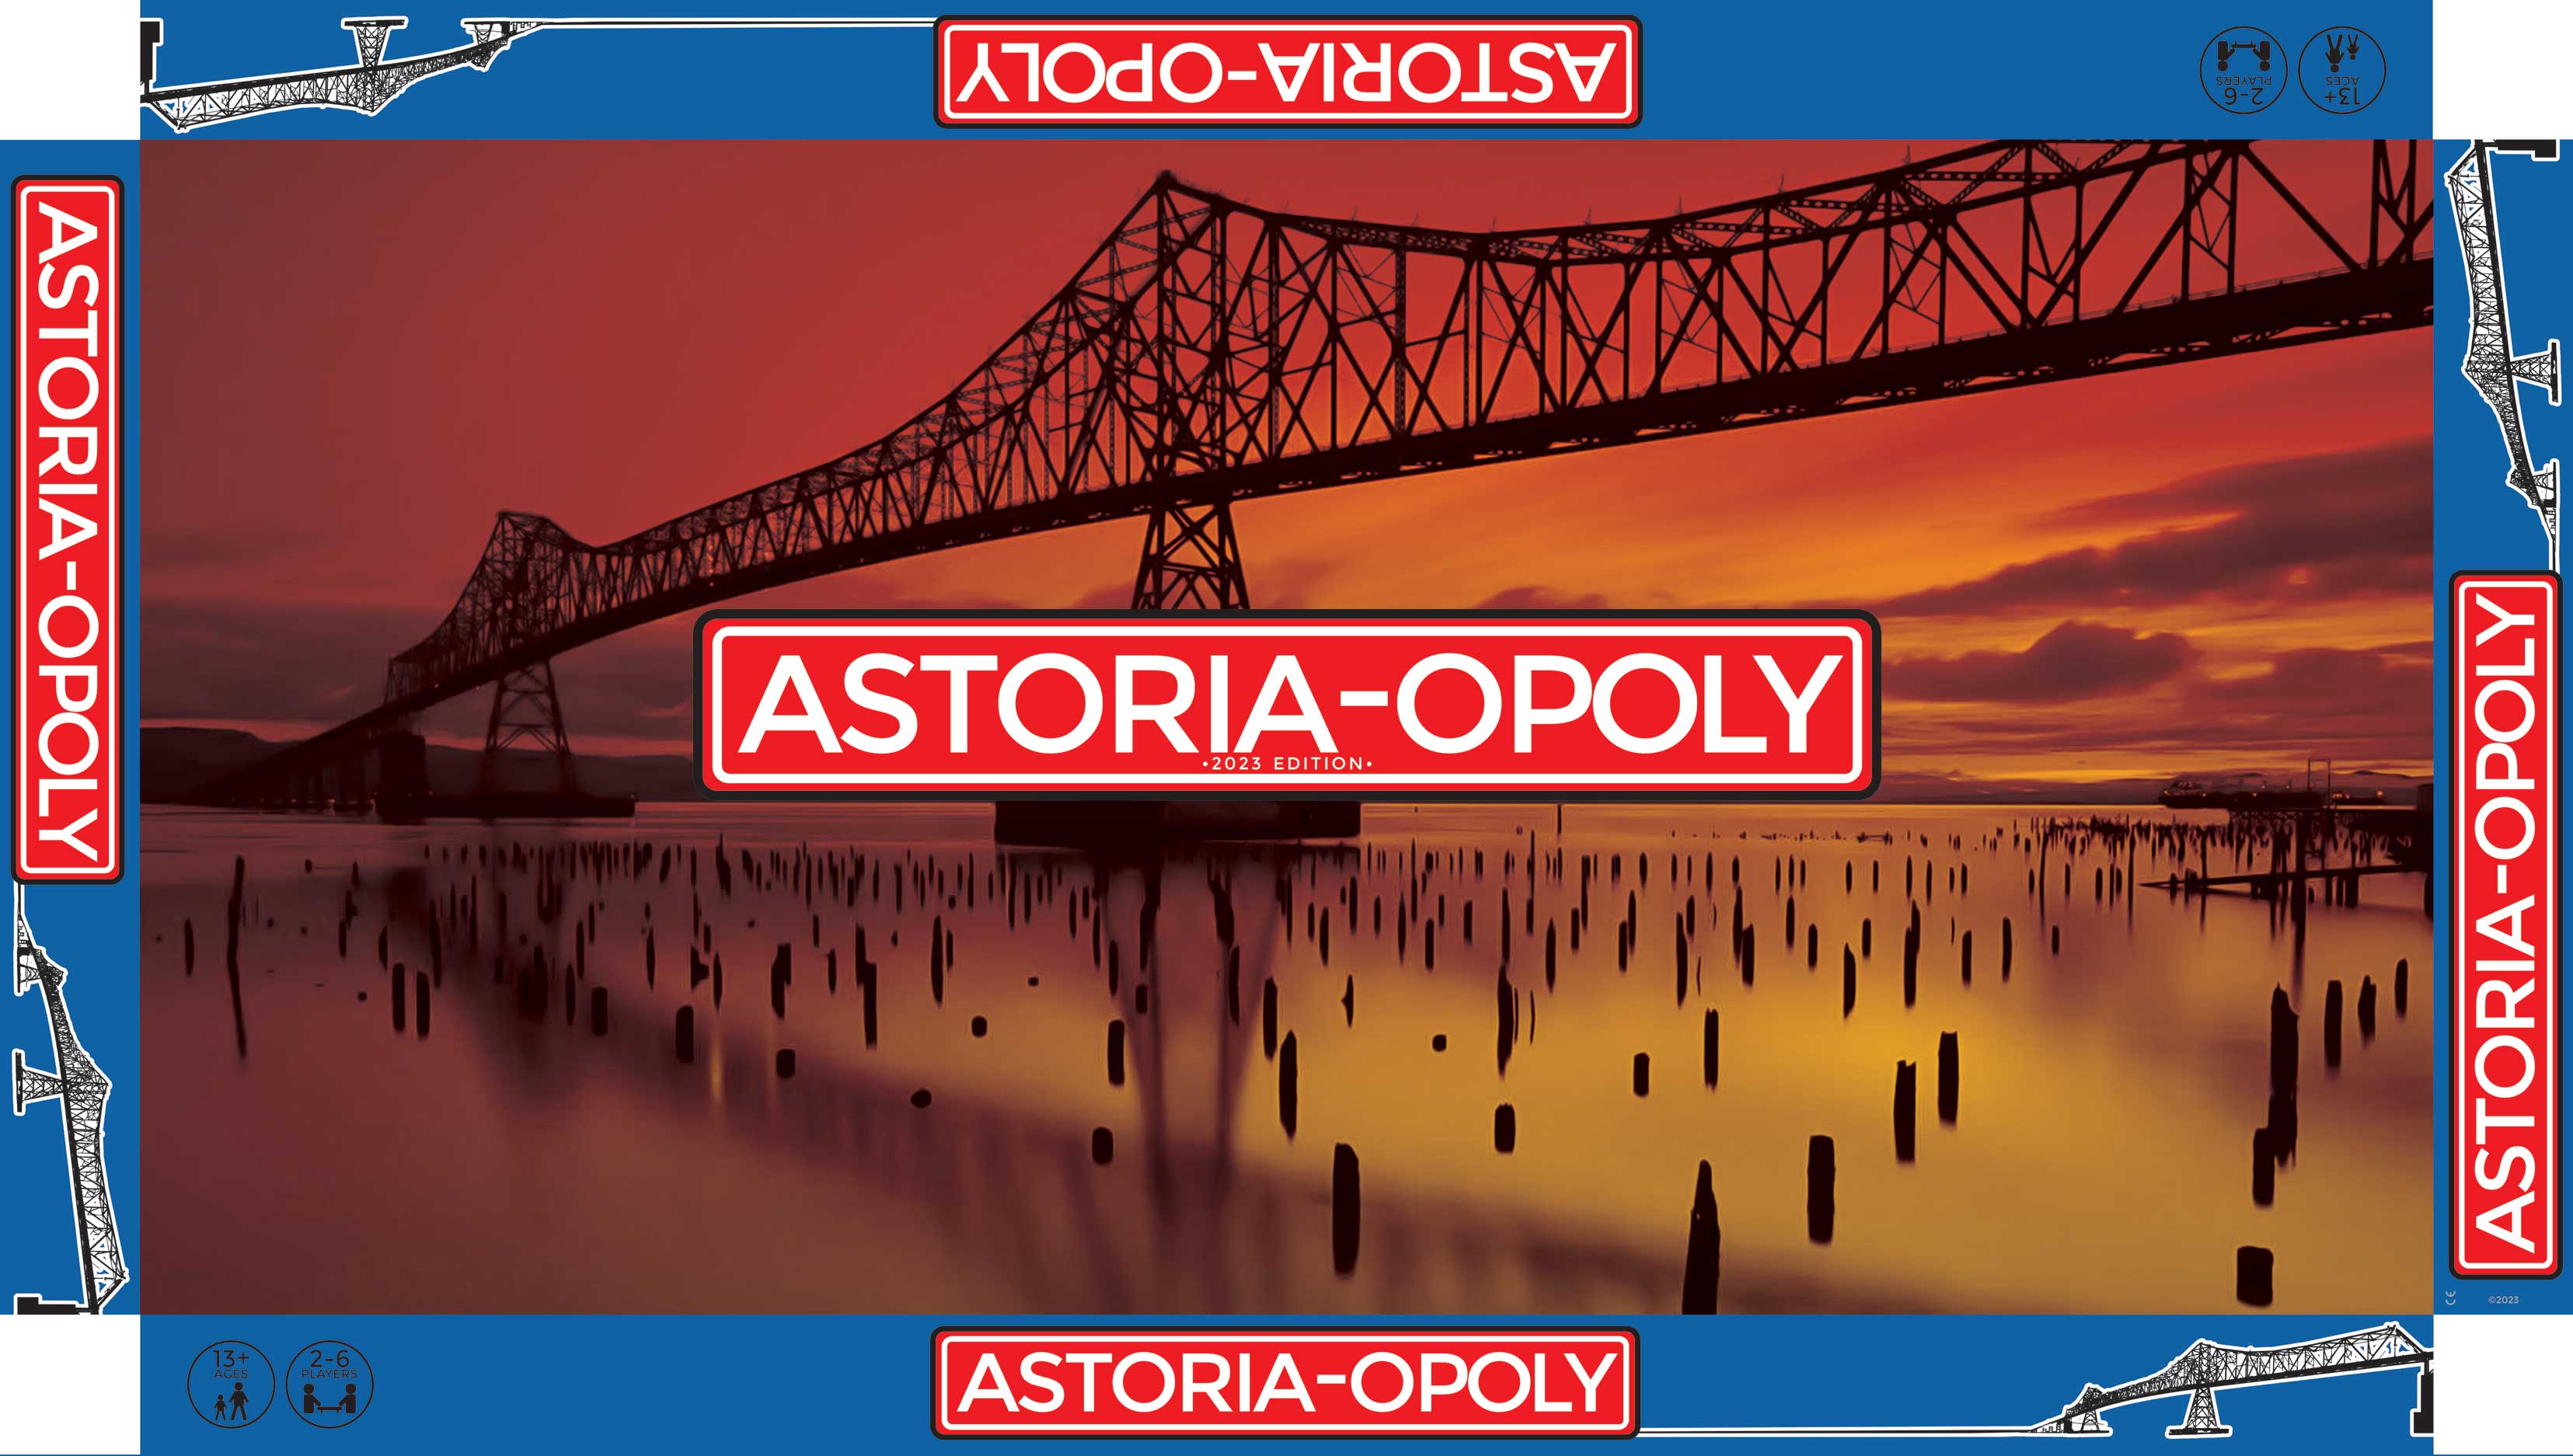 ASTORIA-OPOLY Game Box